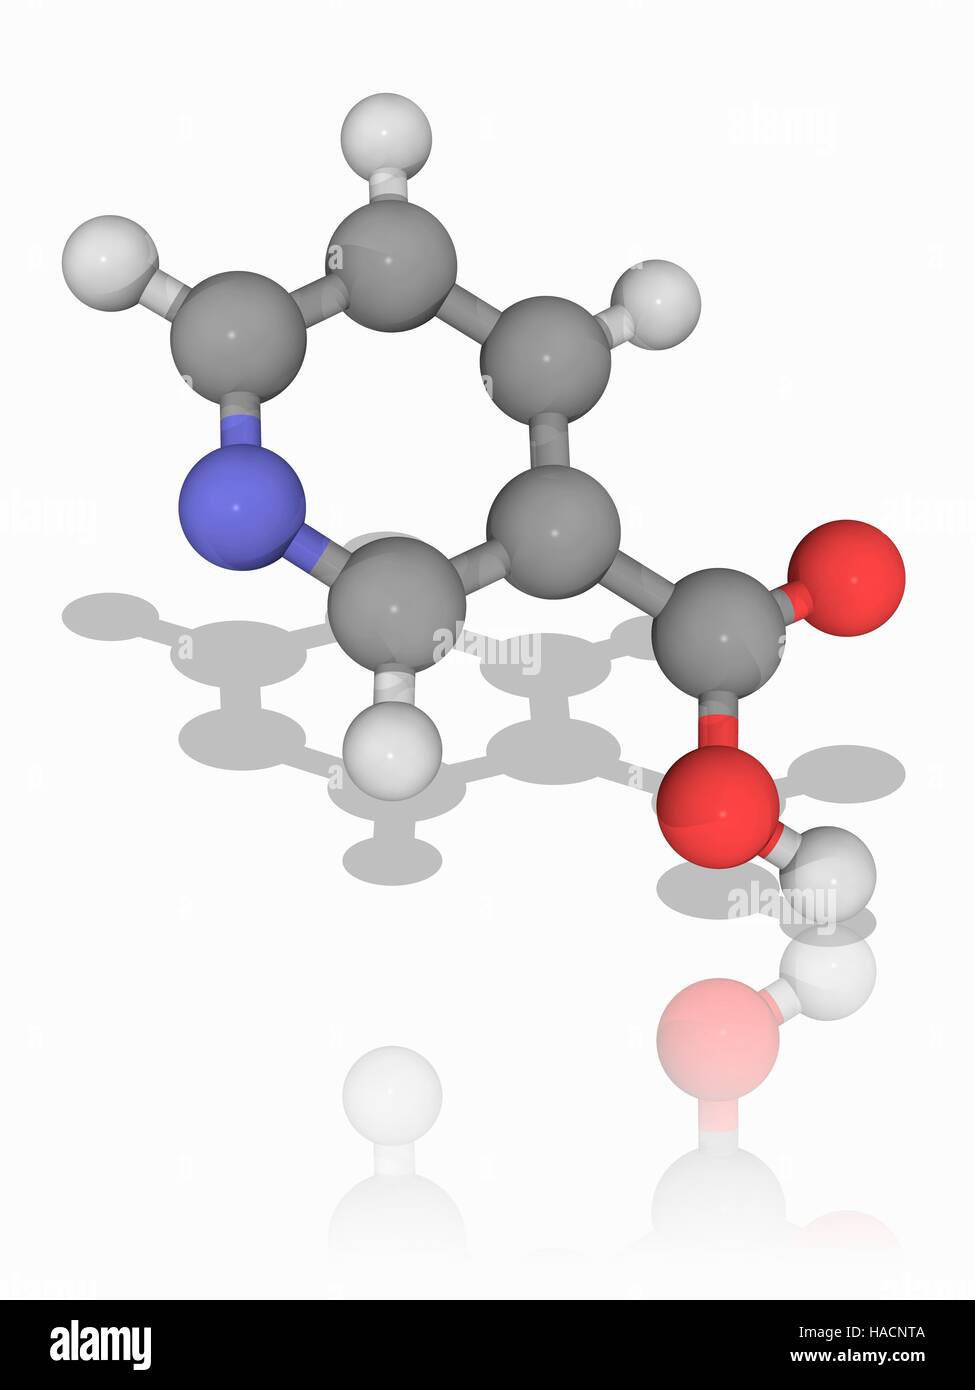 Niacina. Il modello molecolare di niacina (C6.N.H5.O2), noto anche come vitamina B3 e acido nicotinico. Insufficiente apporto di questa vitamina porta ad una malattia chiamata pellagra. Gli atomi sono rappresentati da sfere e sono codificati a colori: carbonio (grigio), Idrogeno (bianco), Azoto (blu) e ossigeno (rosso). Illustrazione. Foto Stock